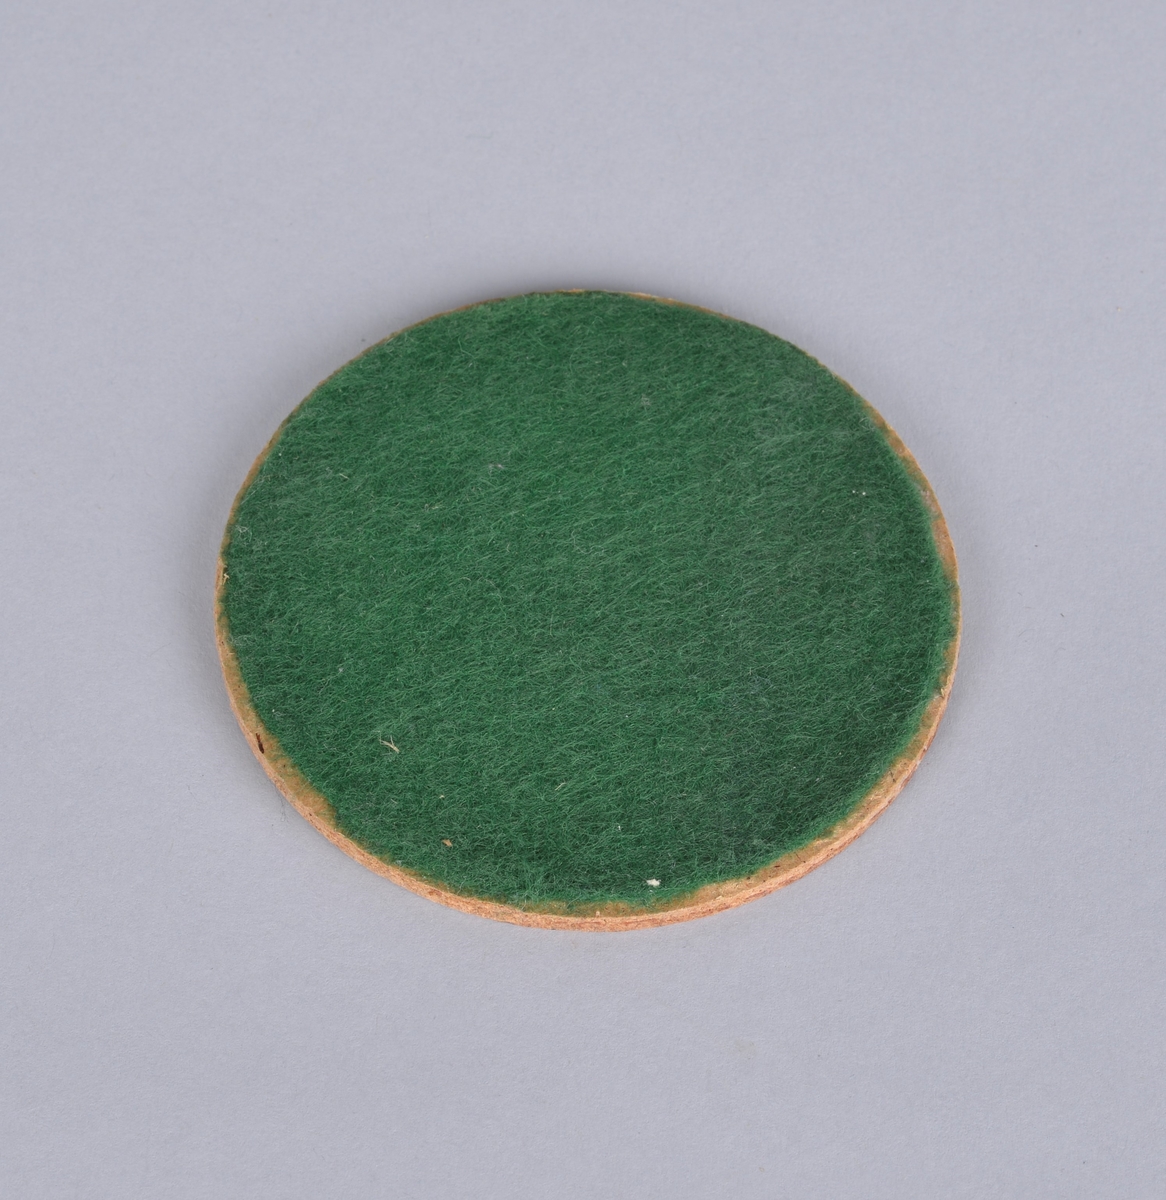 Rund trefiberplate (huntonitt?) med pålimt grønt filtbelegg.
Ukjent bruksområde.

Muligens vært brukt som underlag for glass eller utstyr på laboratoriet.